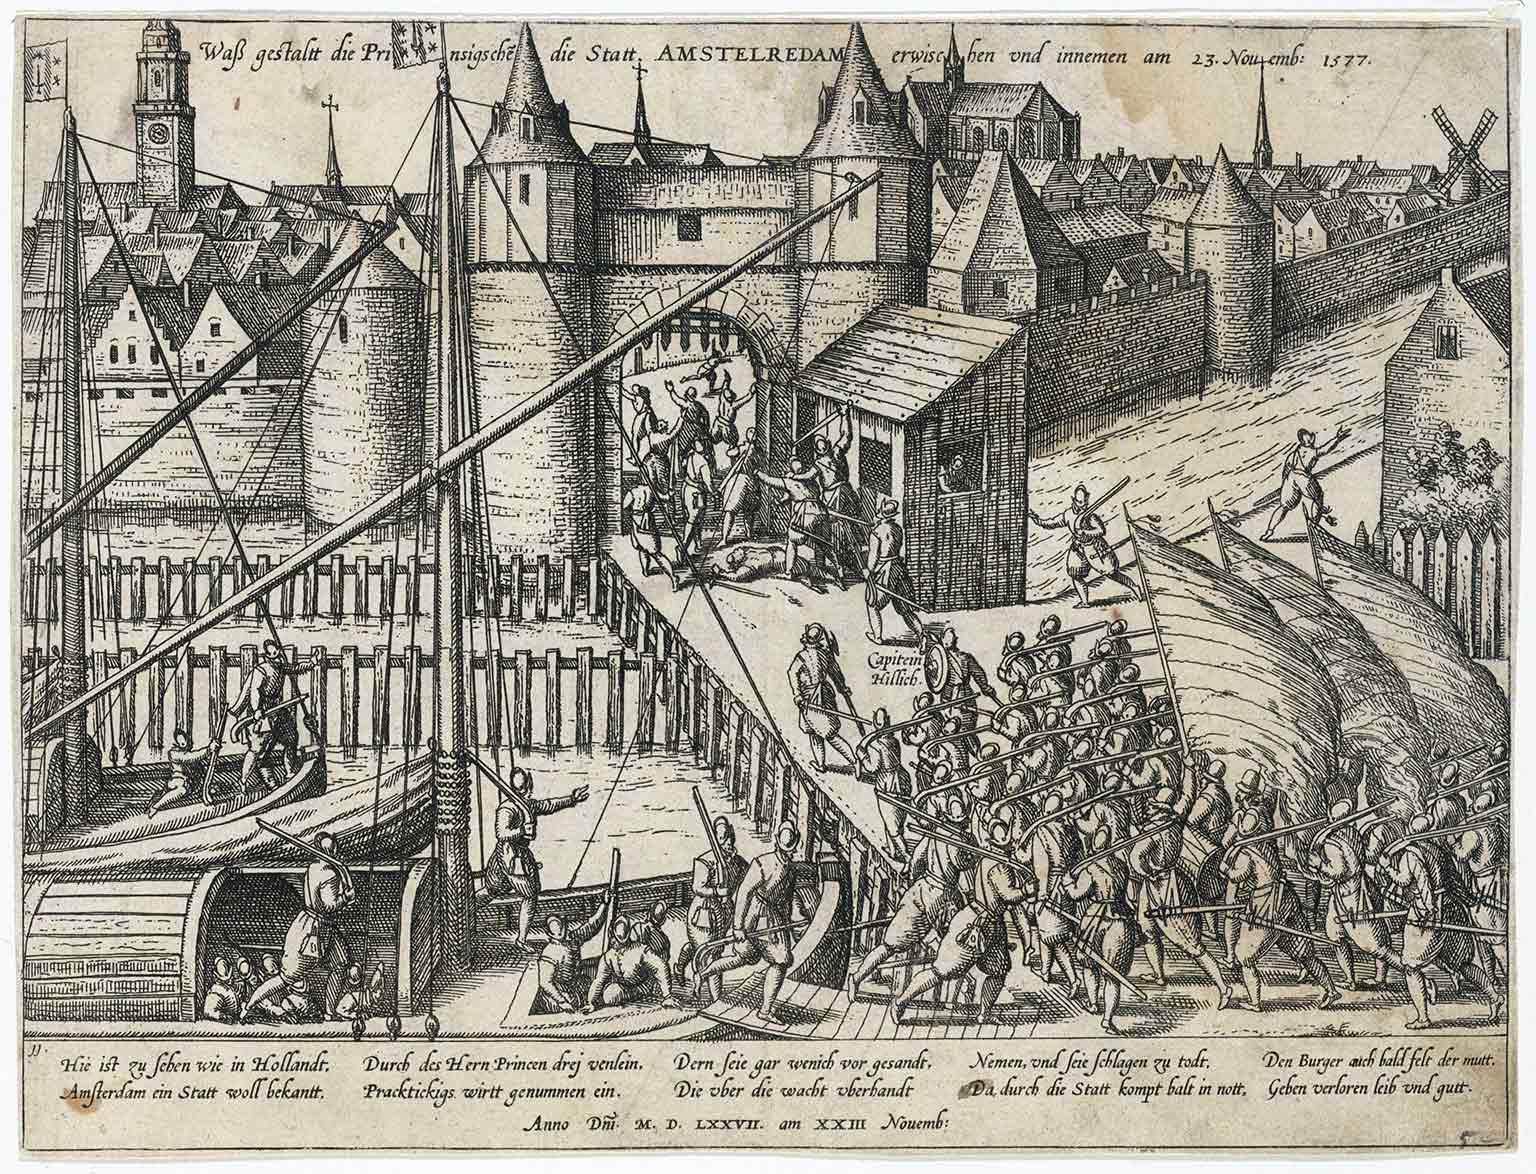 Poging van de Geuzen om Amsterdam in te nemen in 1577 bij de 2e Haarlemmerpoort